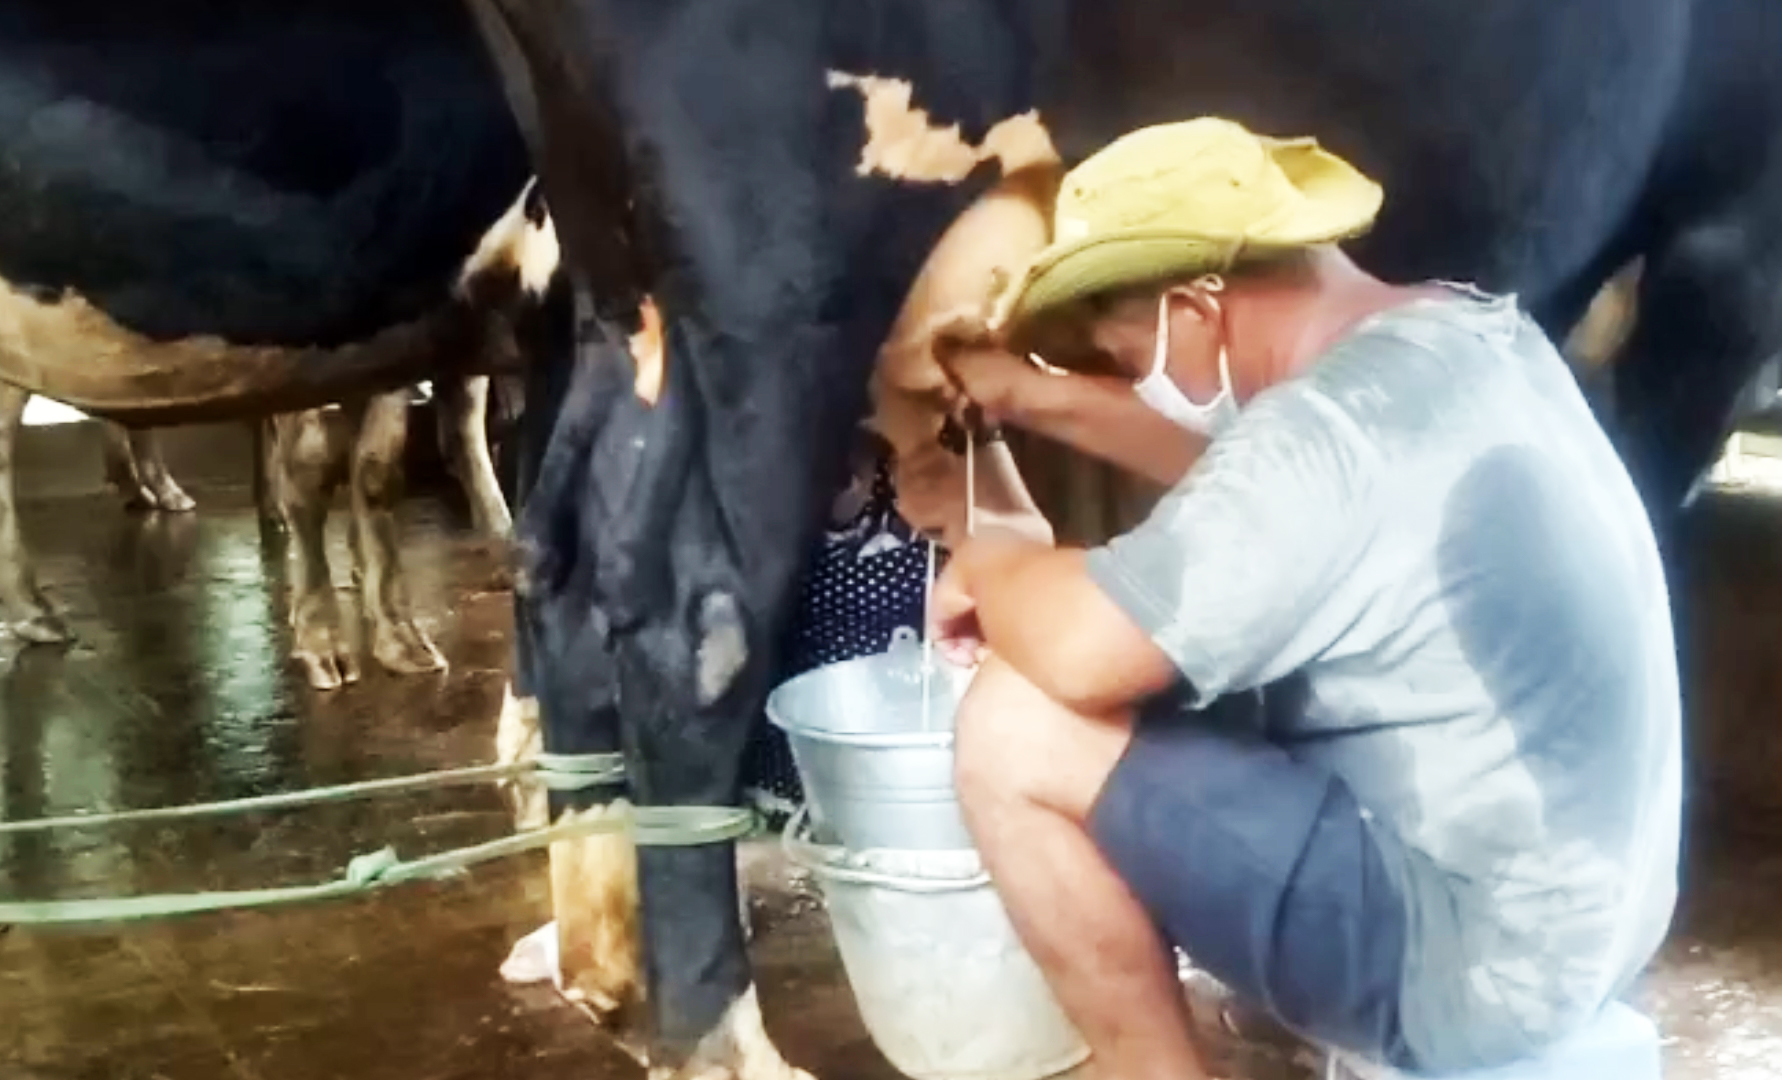 Sóc Trăng: Hàng ngàn lít sữa không thể tiêu thụ, xót xa cảnh nông dân đem sữa đổ bỏ - Ảnh 3.